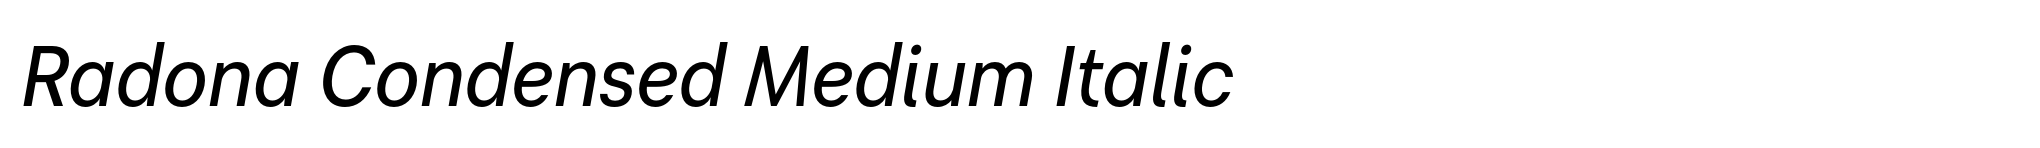 Radona Condensed Medium Italic image